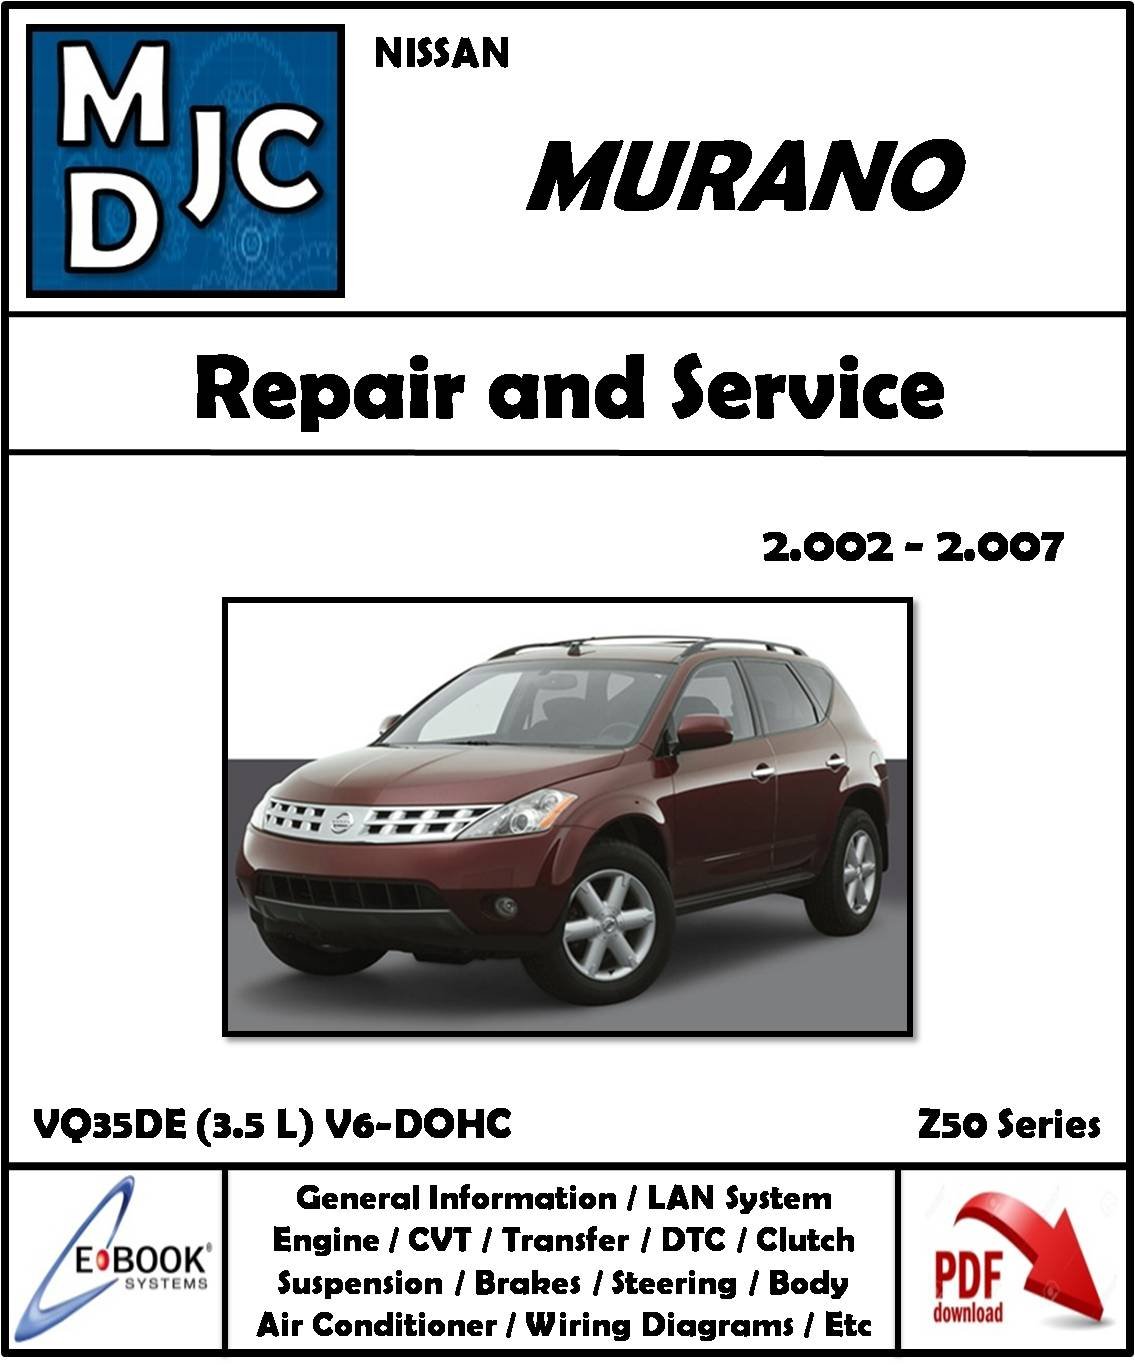 Nissan Murano 2002 - 2007